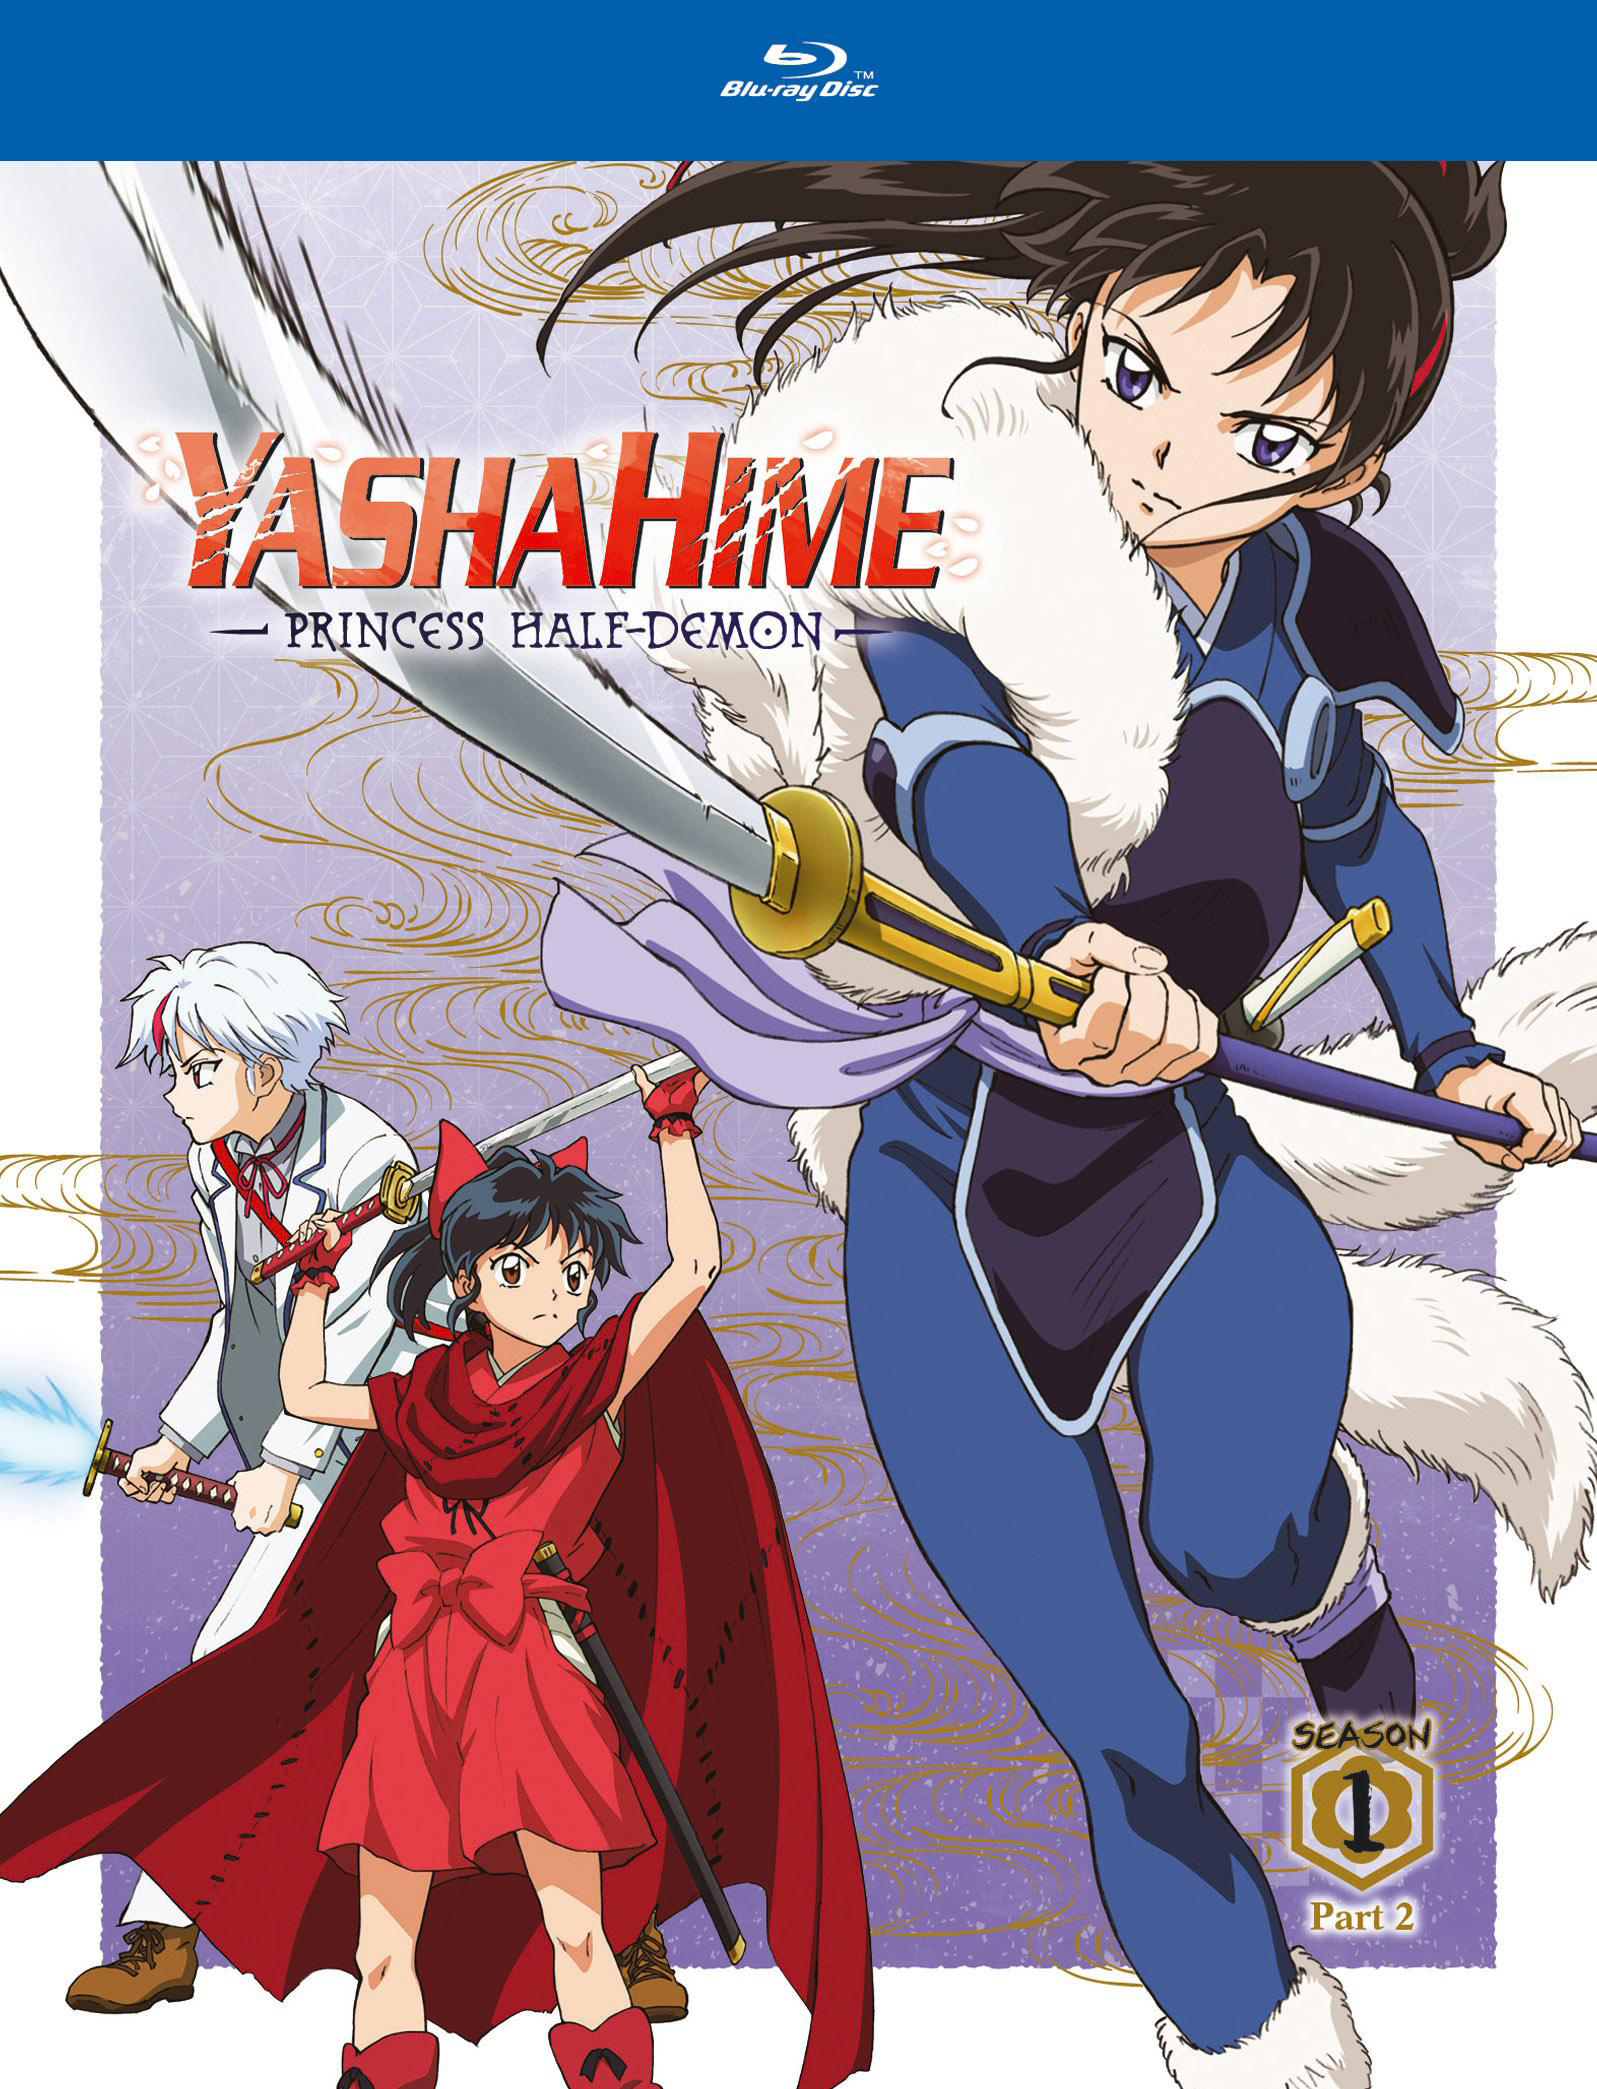 Yashahime Princess half-demon Chapter 2/season 2